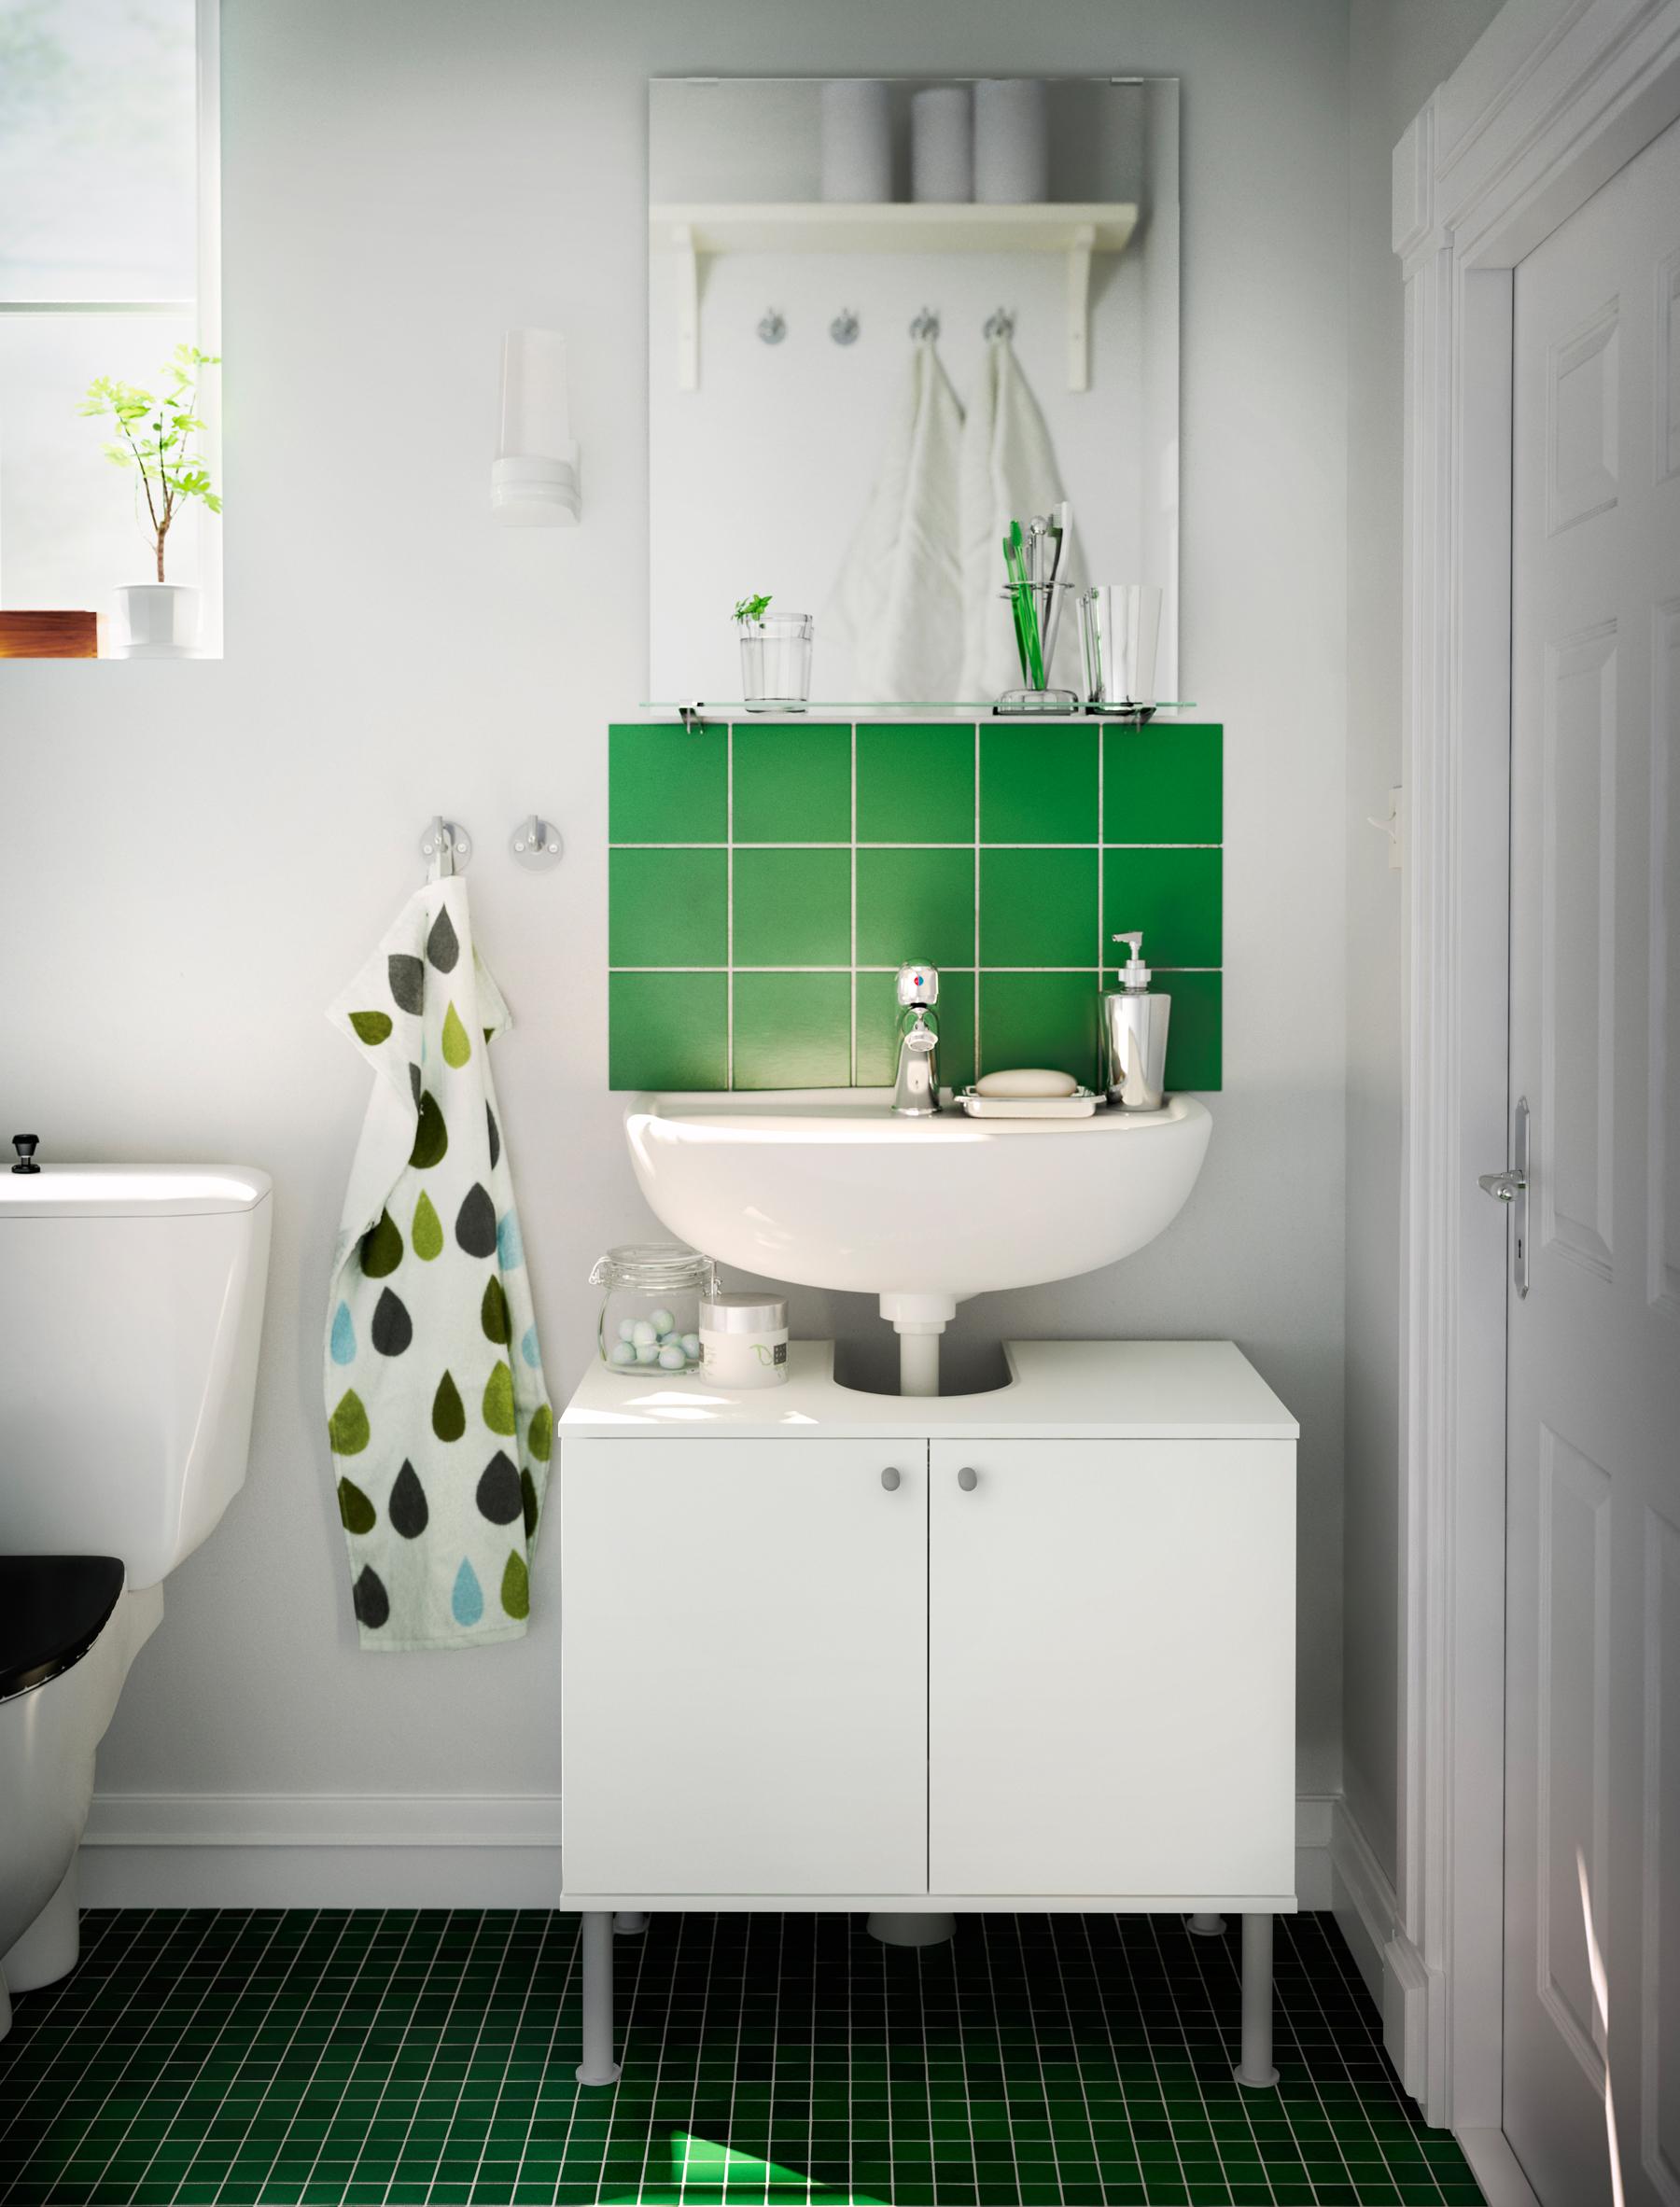 Mosaikfliesen und grüne Dekoelemente im weißen Badezimmer #ikea #waschbeckenunterschrank ©Inter IKEA Systems B.V